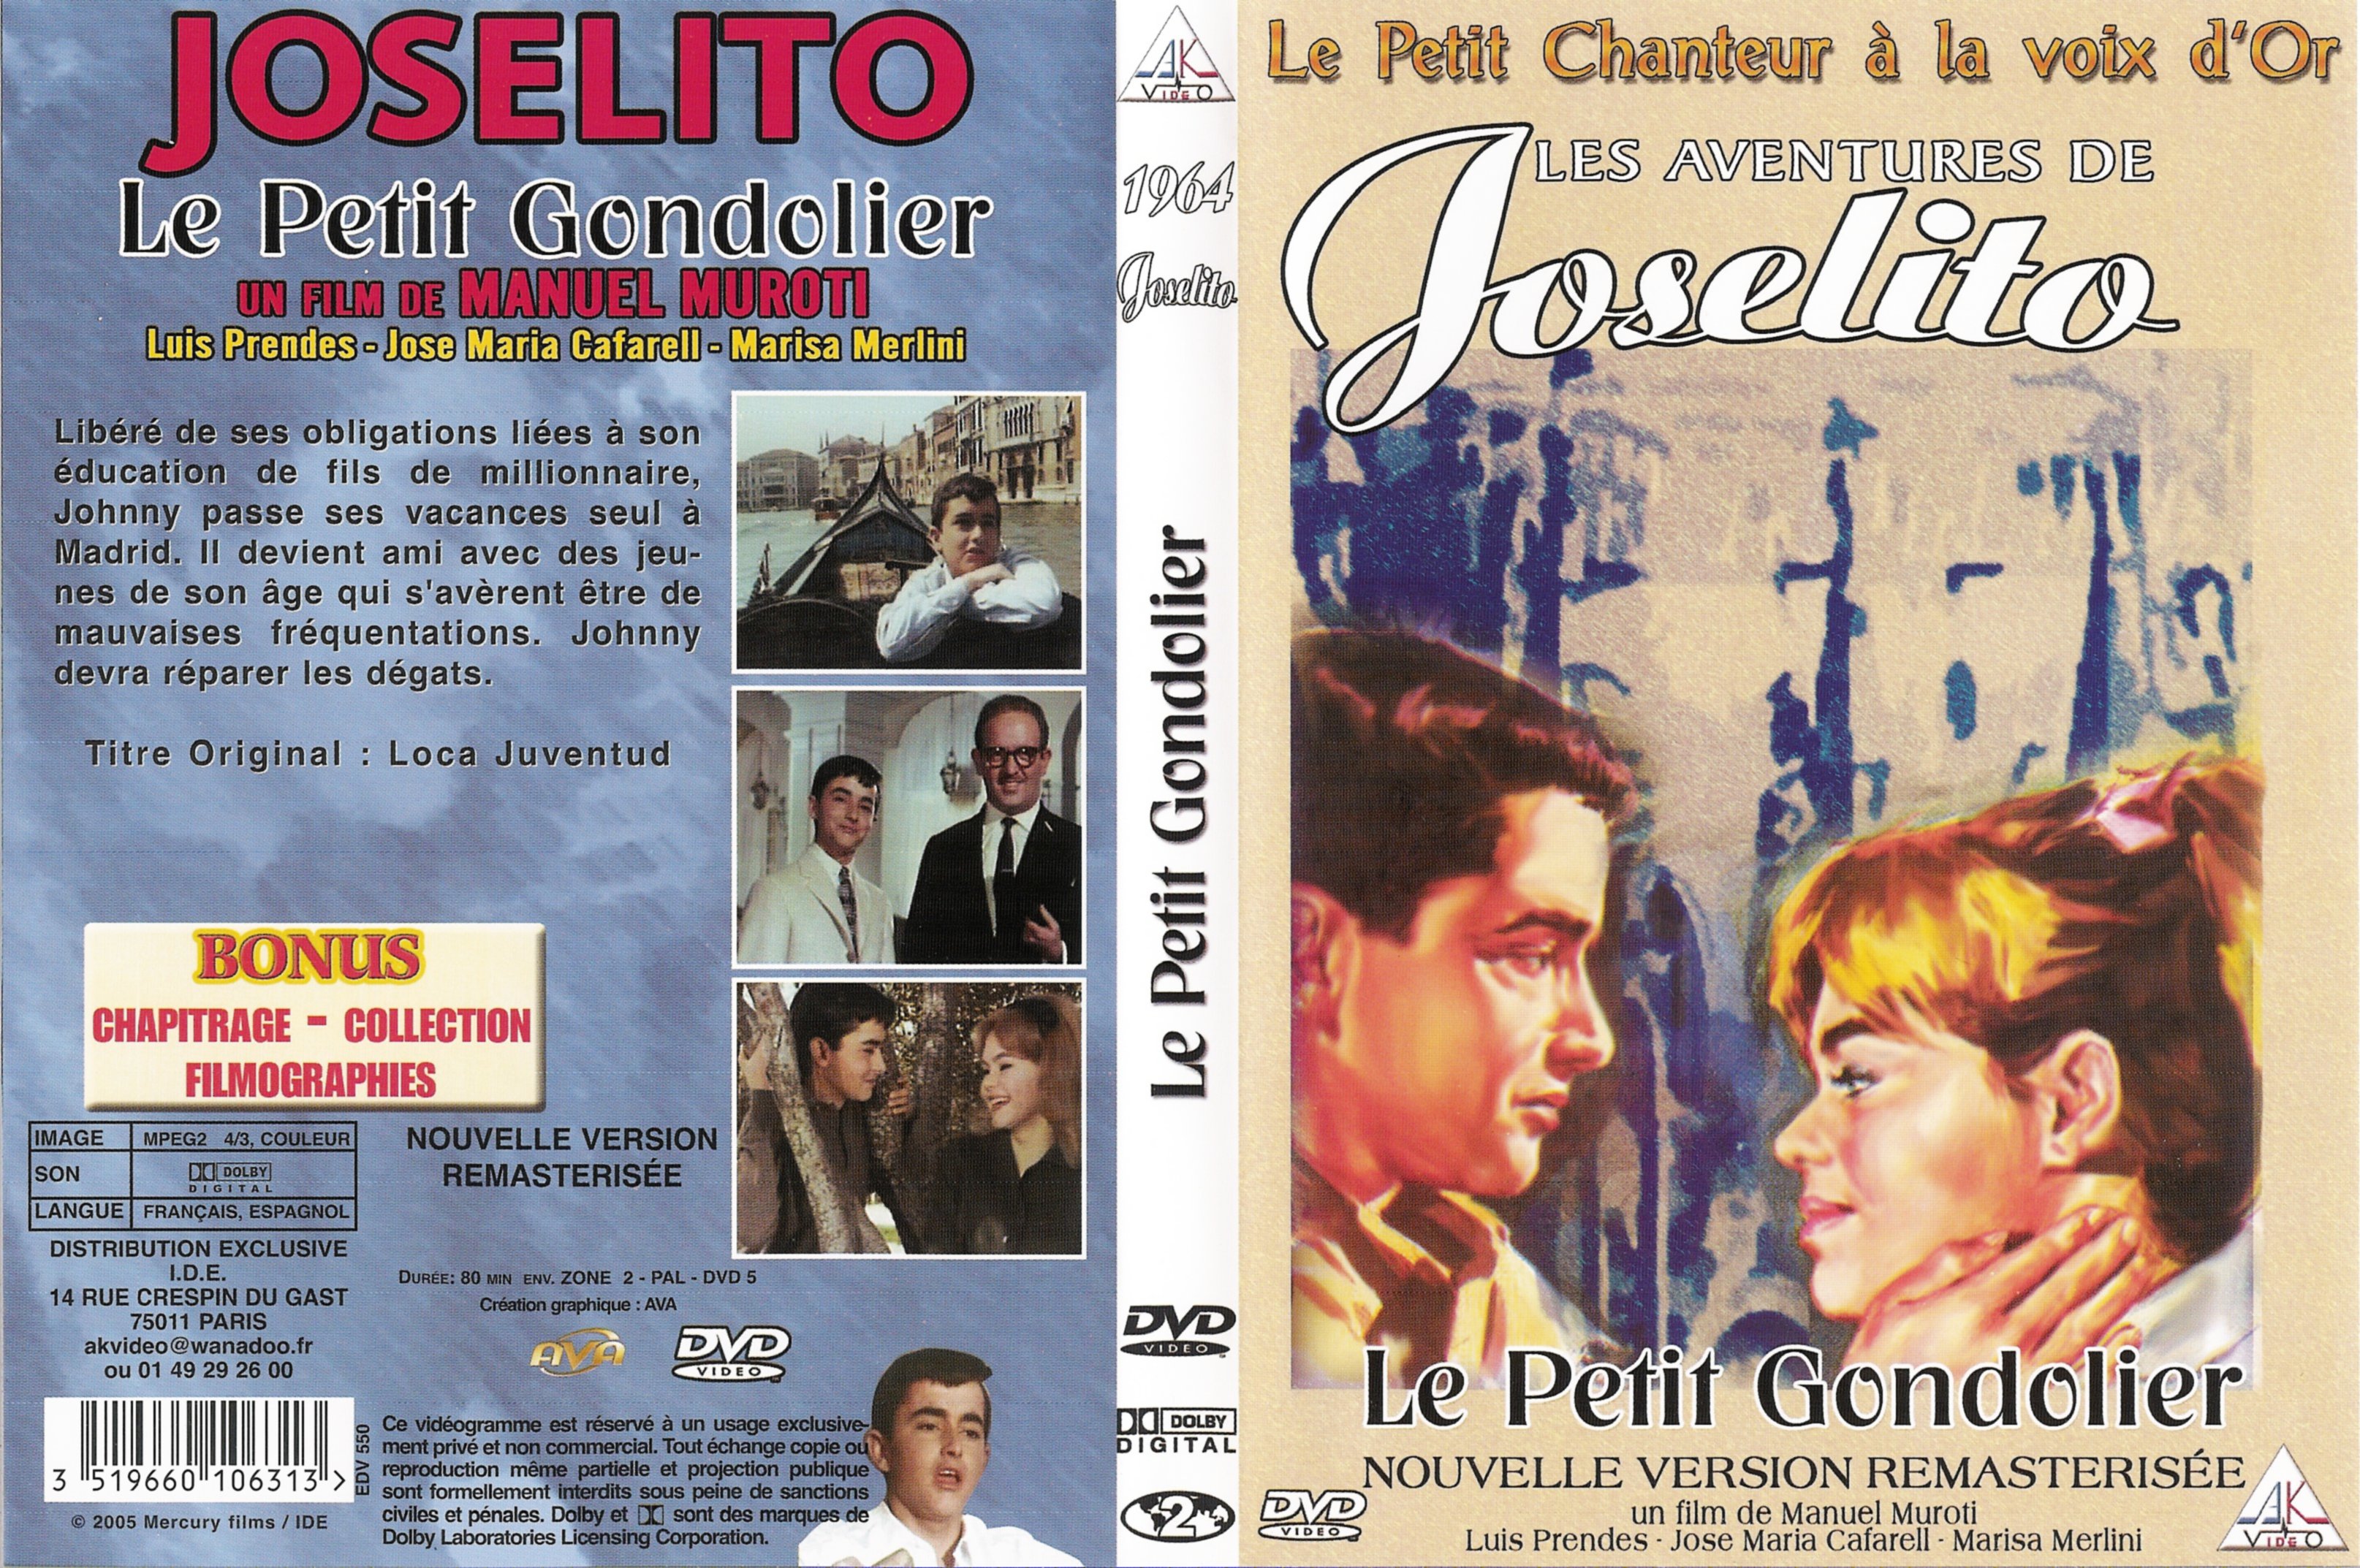 Jaquette DVD Joselito - Le petit gondolier v2